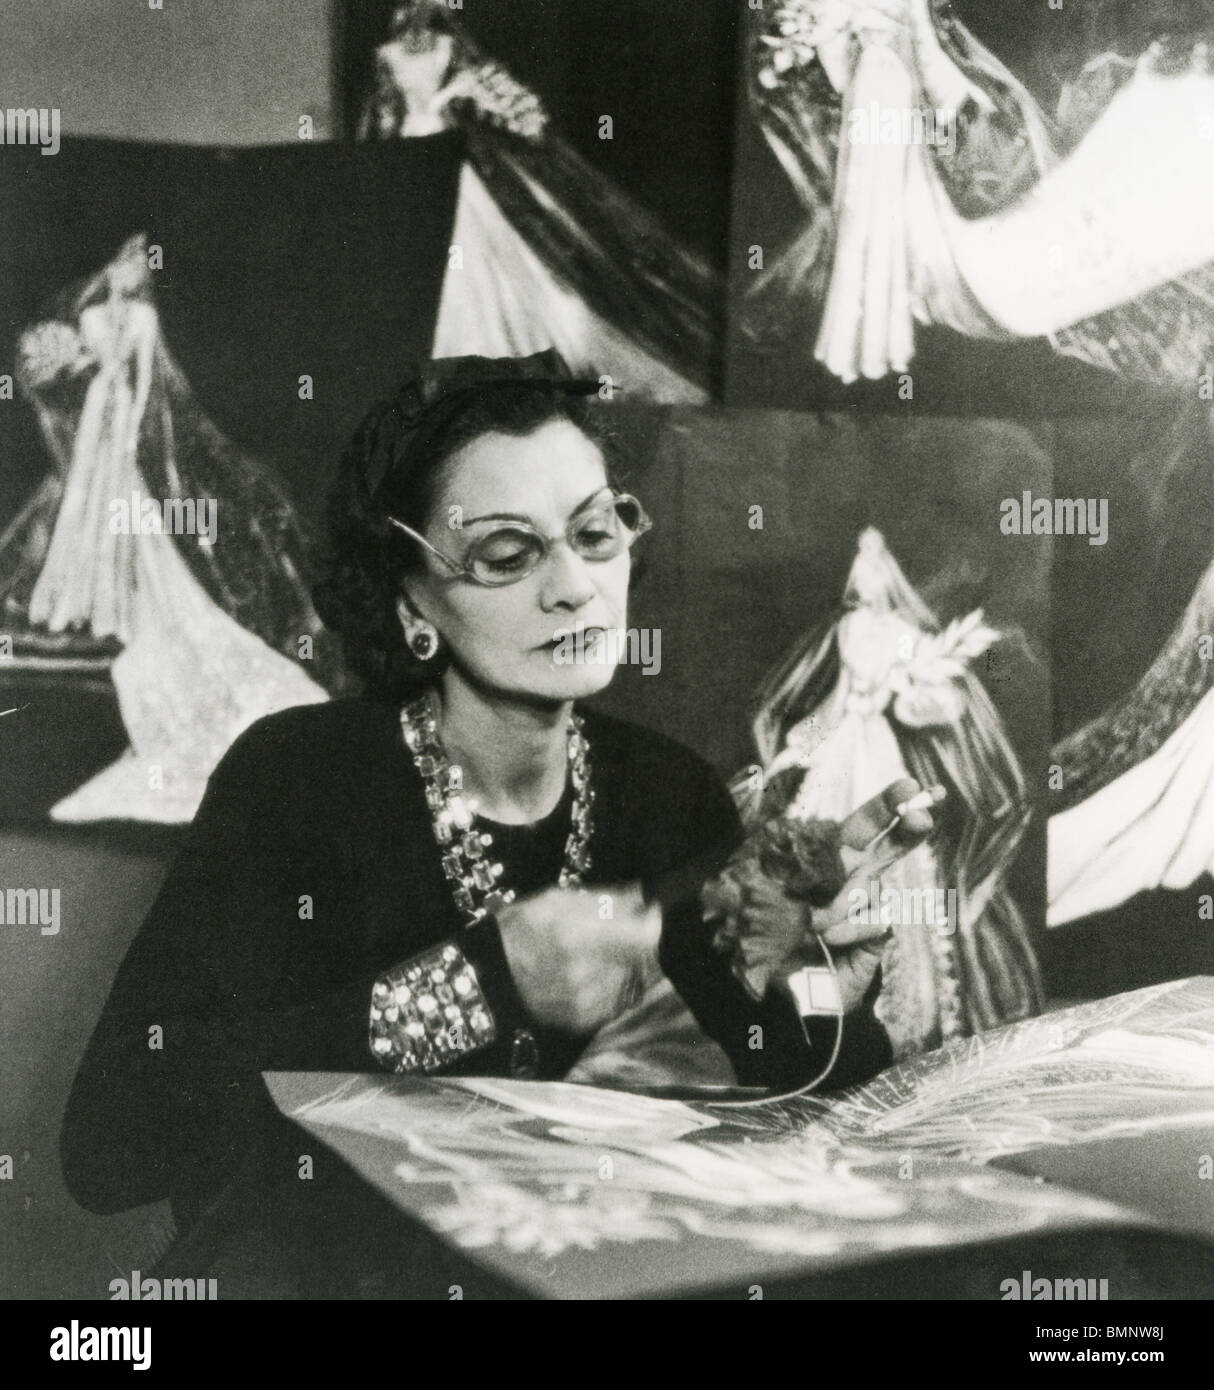 COCO CHANEL - Francese fashion designer (1883-1971) al lavoro nel 1937 Foto  stock - Alamy